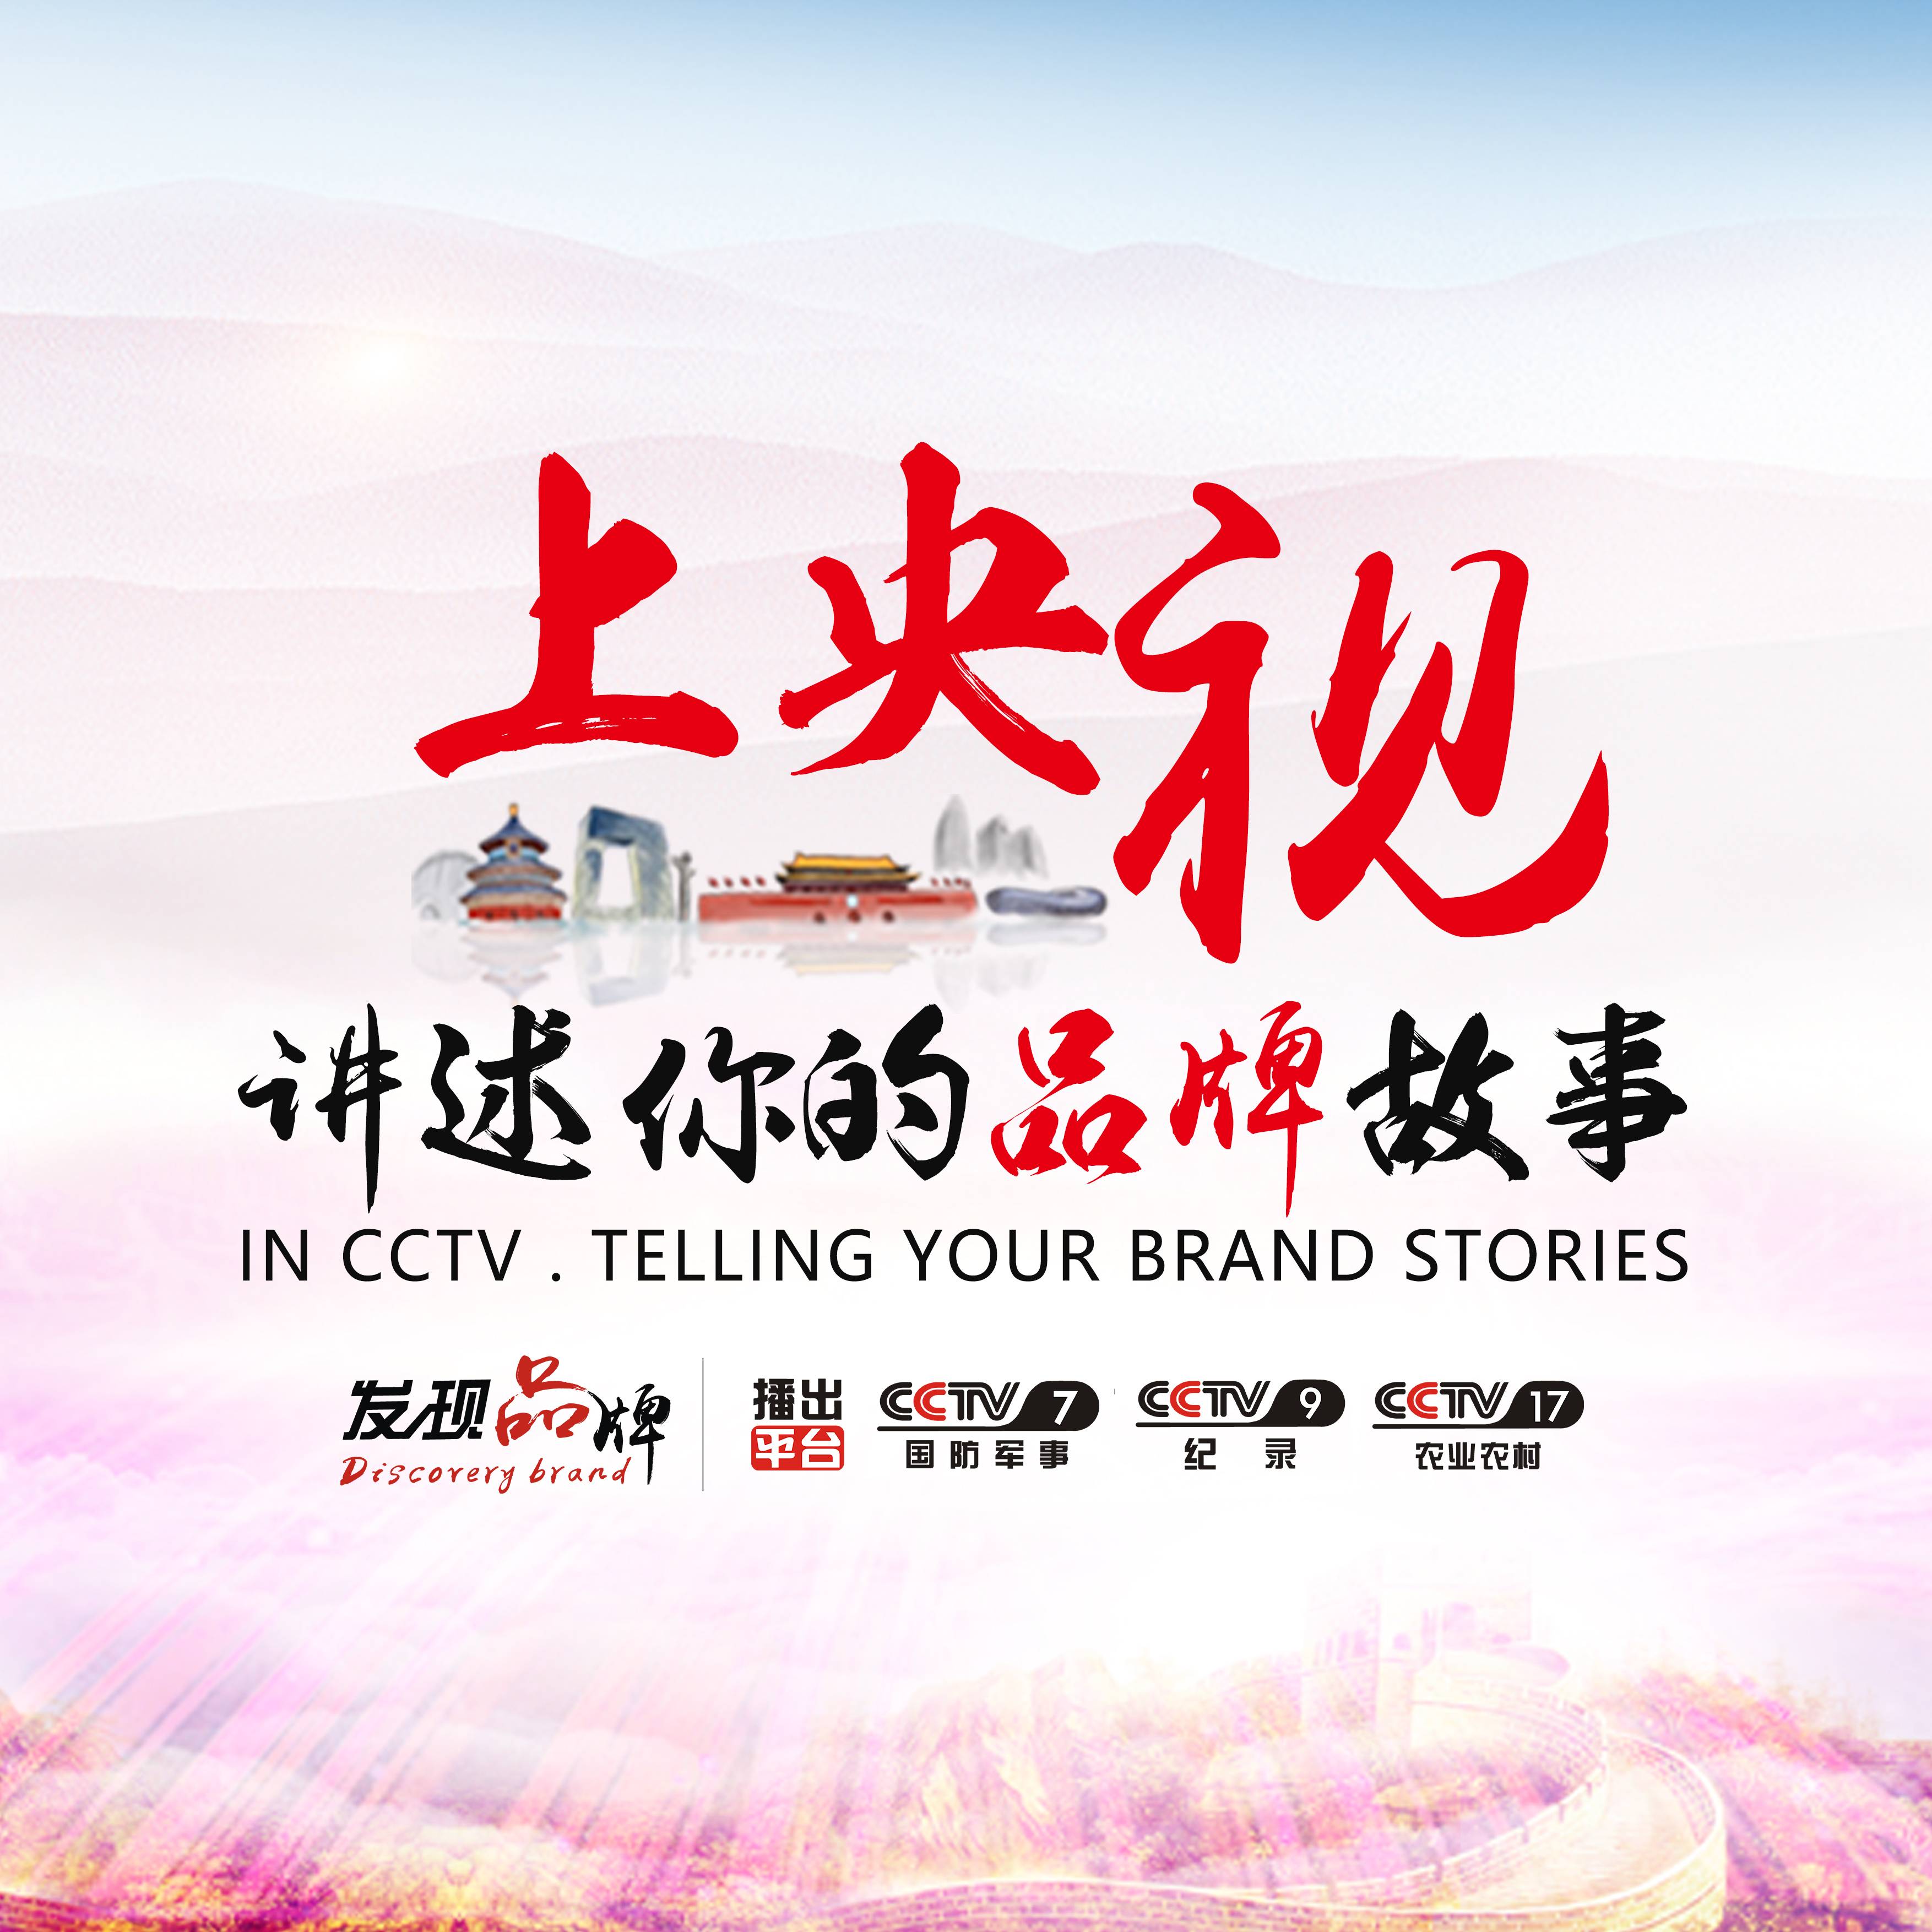 祝贺中国弄拉景区入围《发现品牌》栏目评选成功登陆央视展播